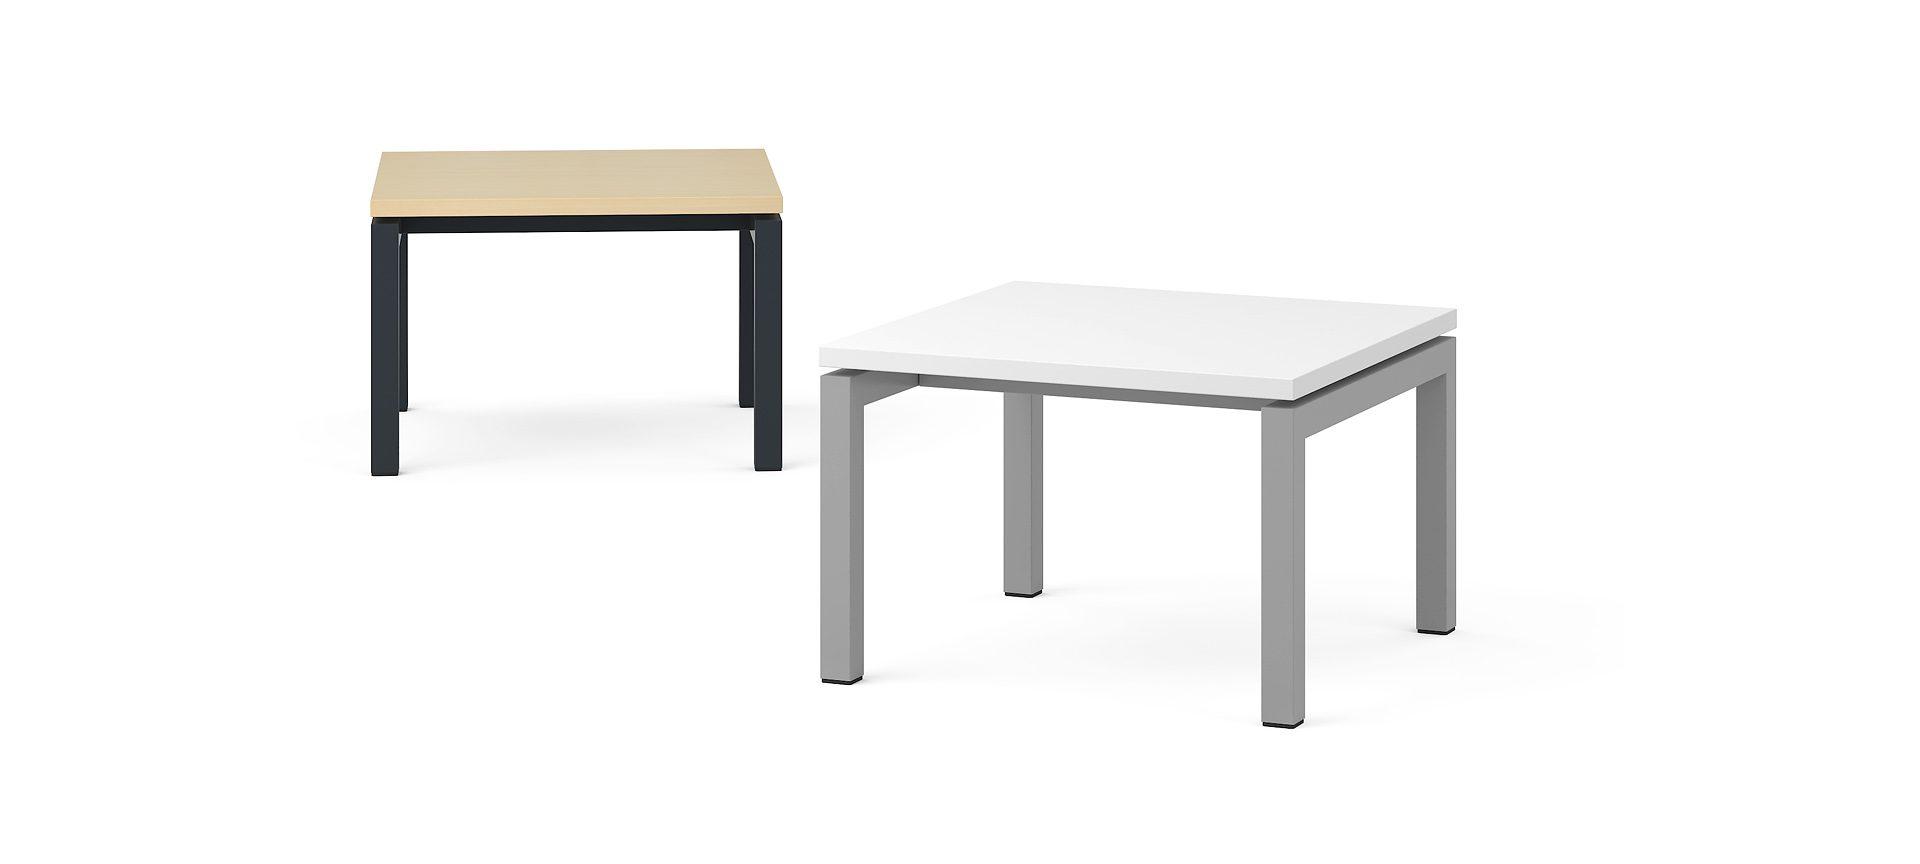 Кофейный столик NOVA, 600x600x400 мм Цвет столешницы: M1 - Белый меламин, Цвет ножек: A - Черная